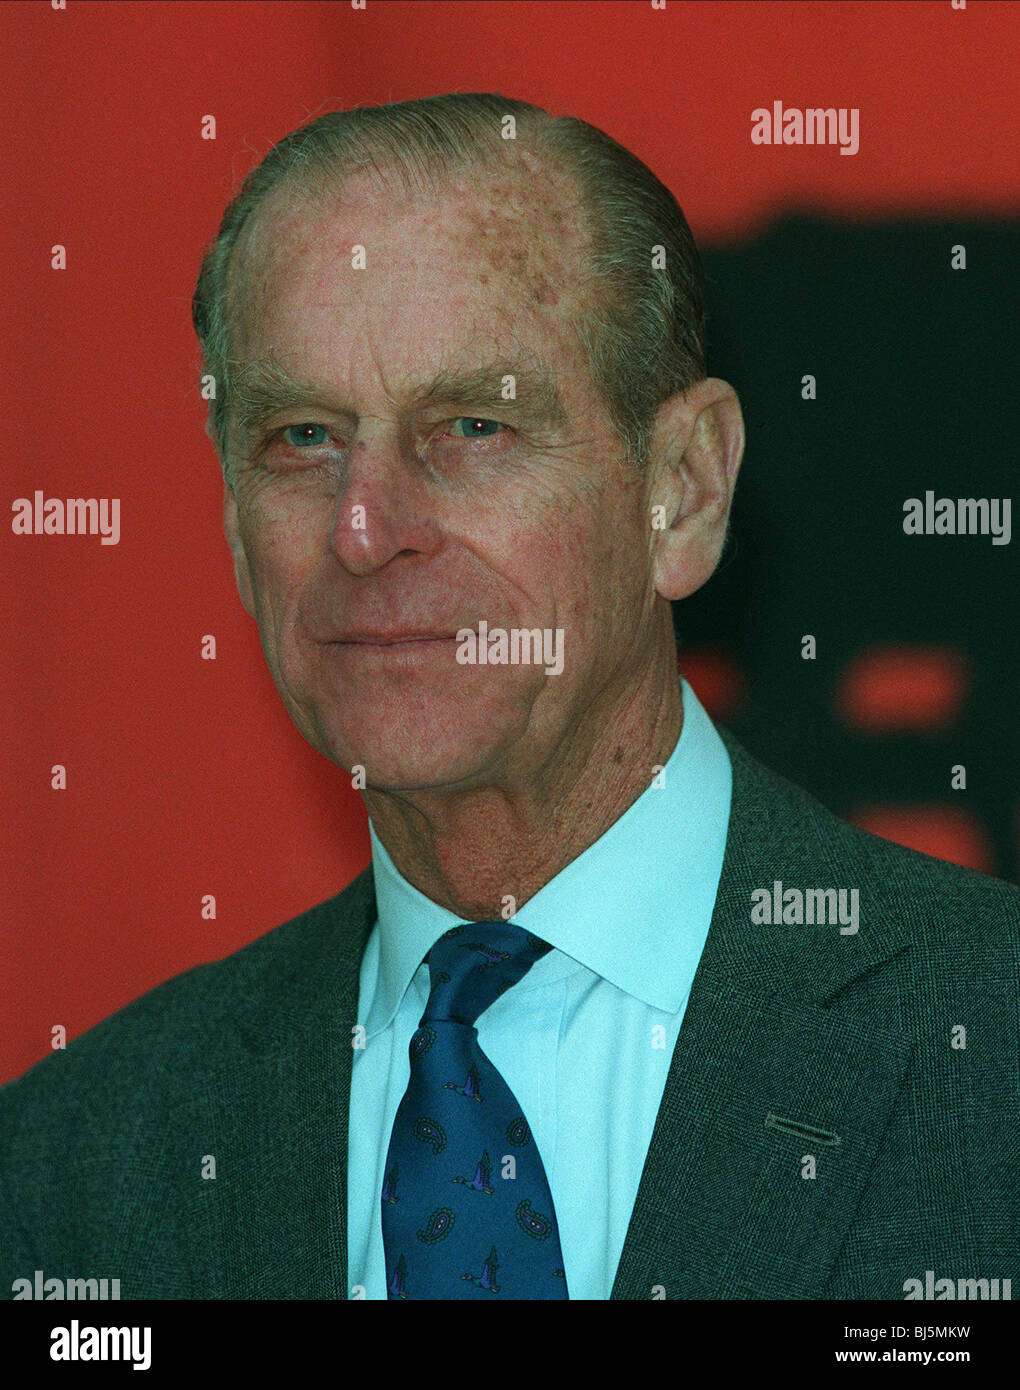 El príncipe Felipe, Duque de Edimburgo el 23 de febrero de 1995 Foto de stock